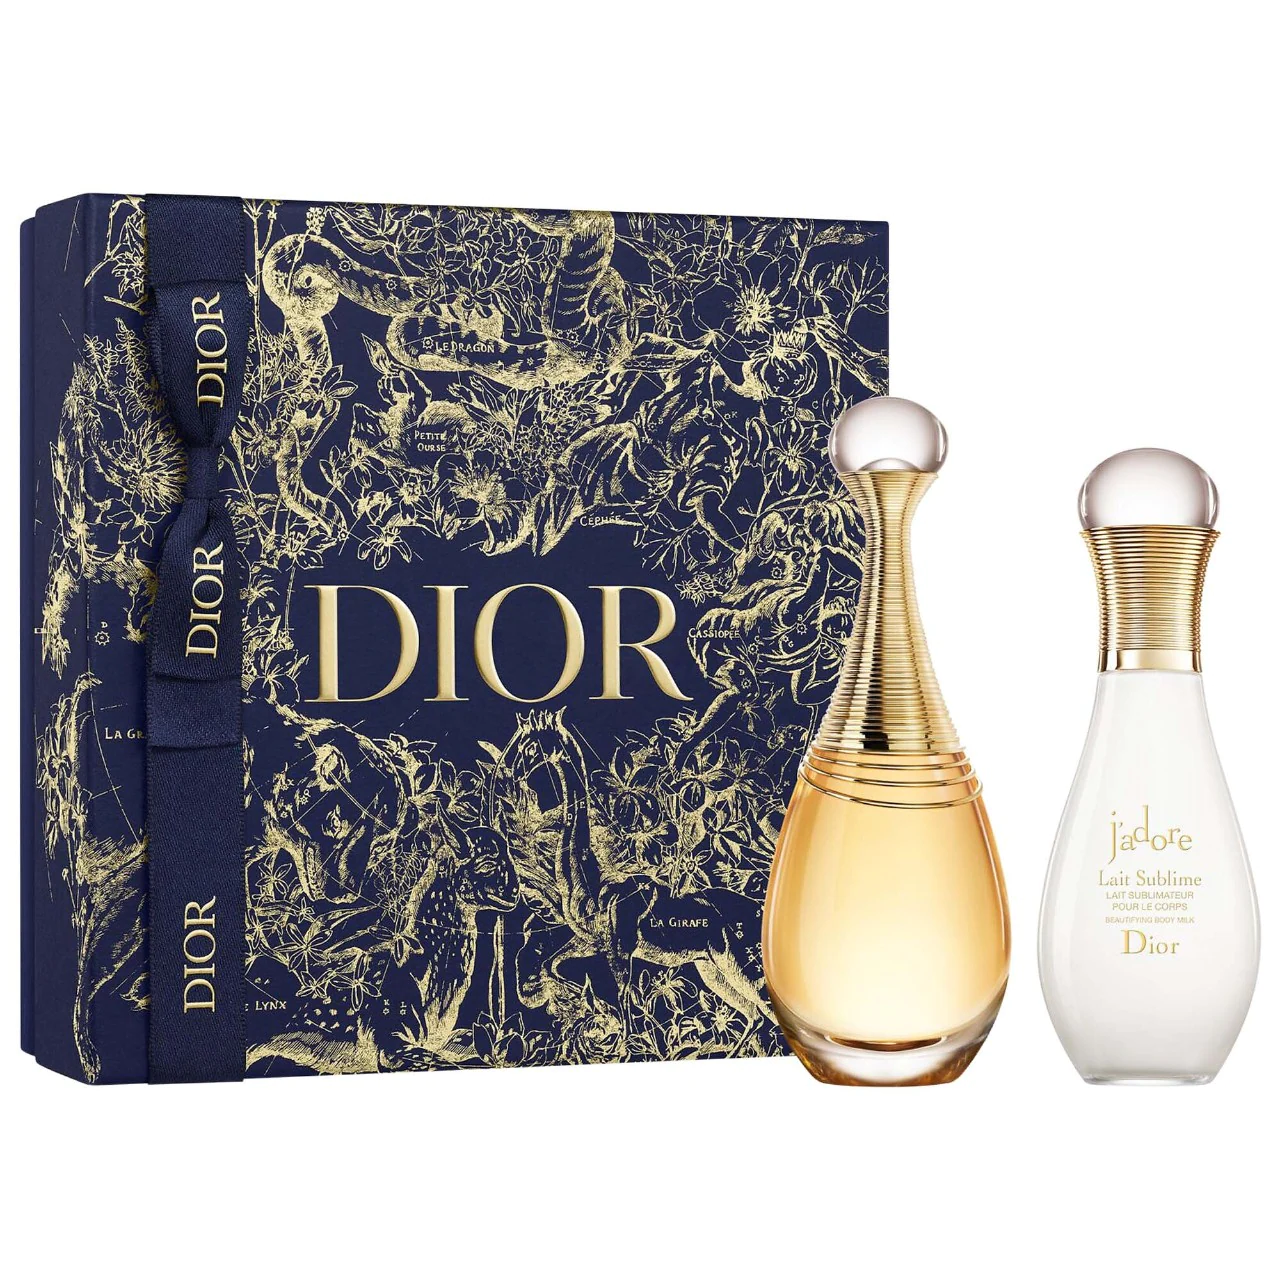 上新！Sephora 美网：Dior J'adore 香水50ml+身体乳75ml 礼盒套装,海淘